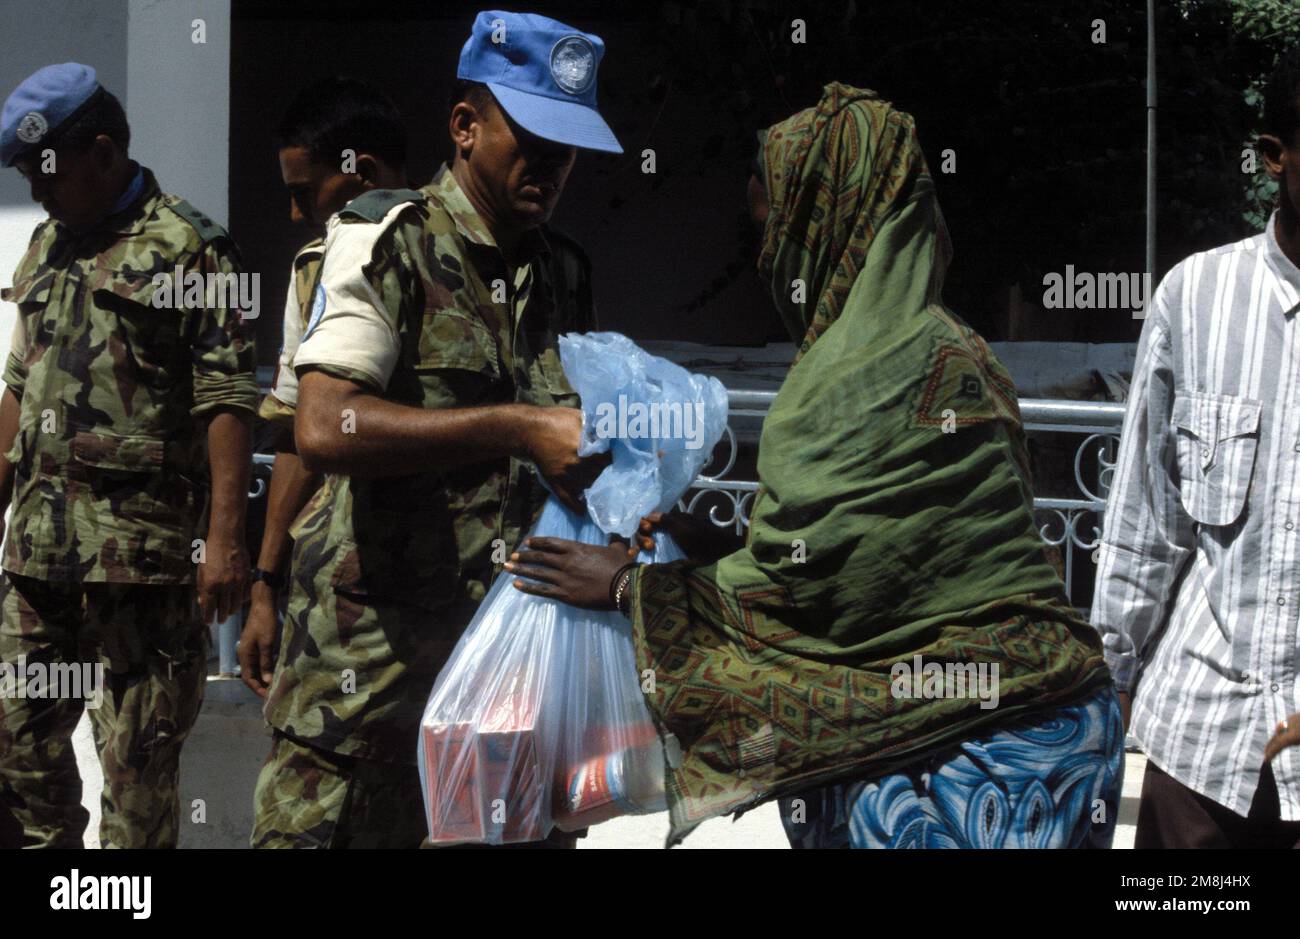 Los soldados nepalíes distribuyen comida a los residentes somalíes como parte de la celebración del cumpleaños de su rey. Los nepaleses celebran el cumpleaños de su Rey ayudando a los menos afortunados. Asunto Operación/Serie: UNOSOM II Base: Mogadiscio País: Somalia (SOM) Foto de stock